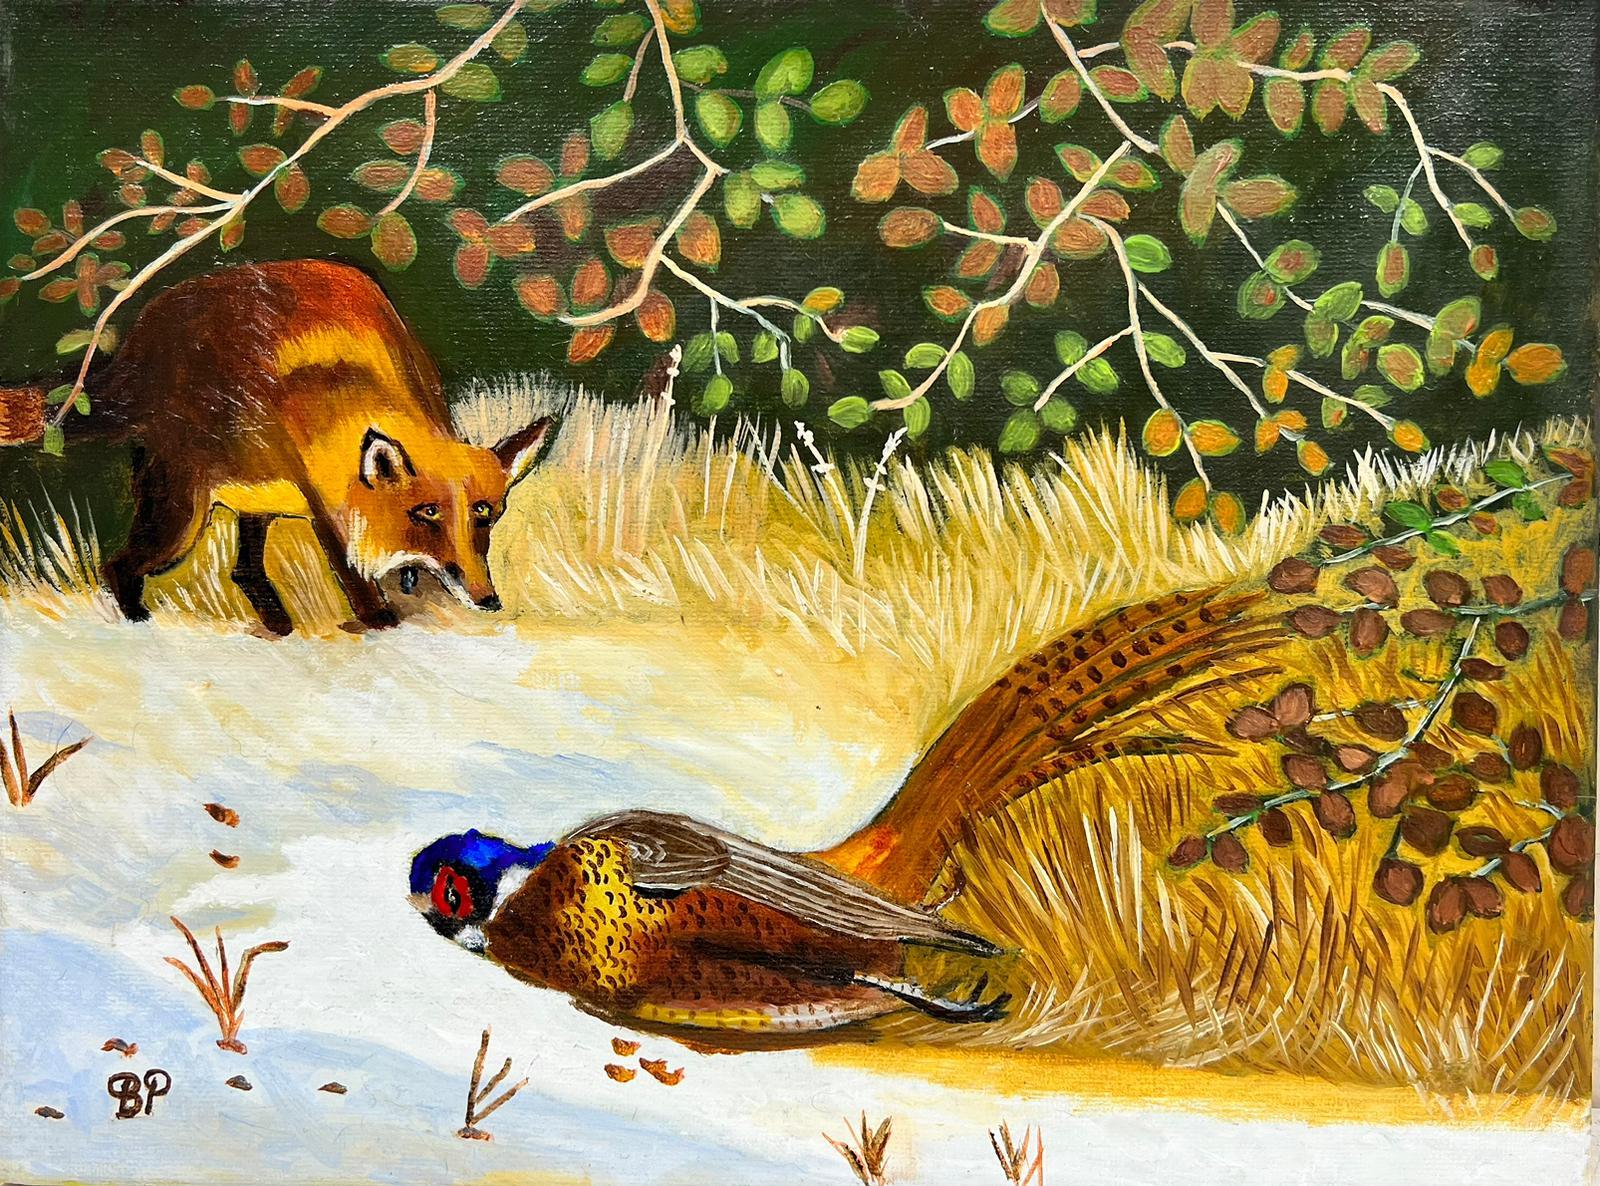 Animal Painting Ben Powell - Peinture acrylique britannique contemporaine représentant une forêt de renard et de faisan